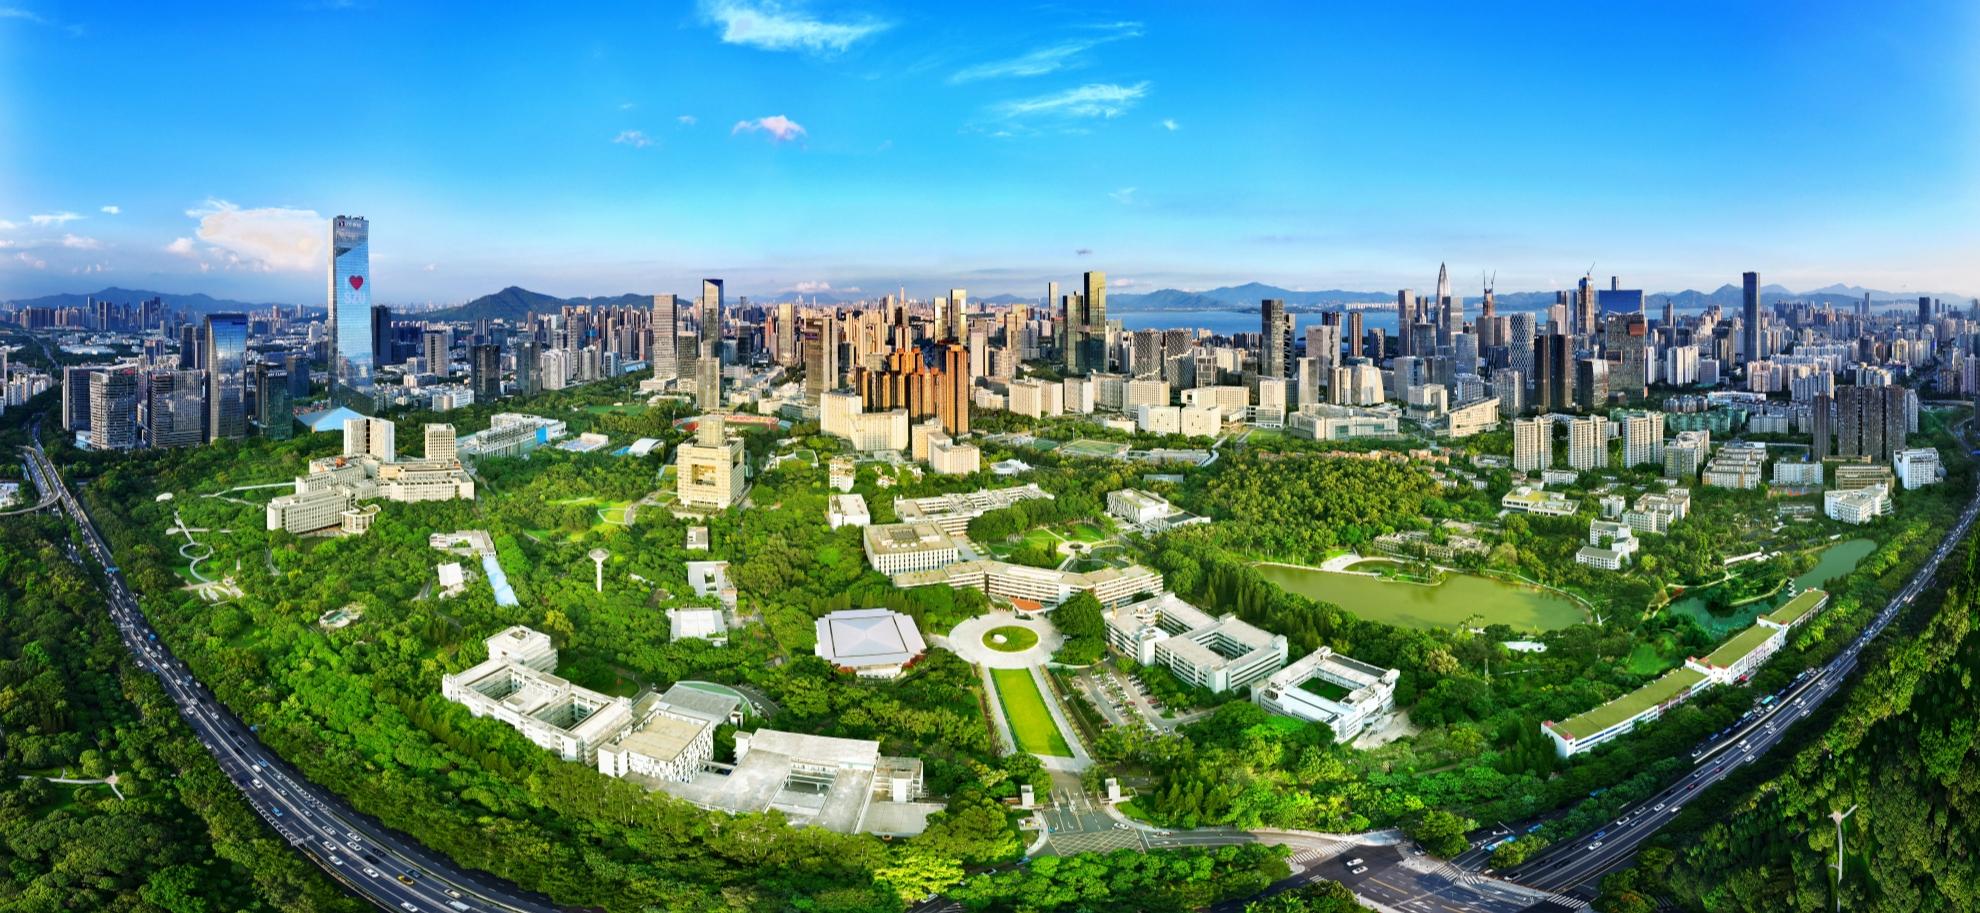 365完美体育入选深圳市第一批地名保护名录“改革开放地名——公共设施名称”